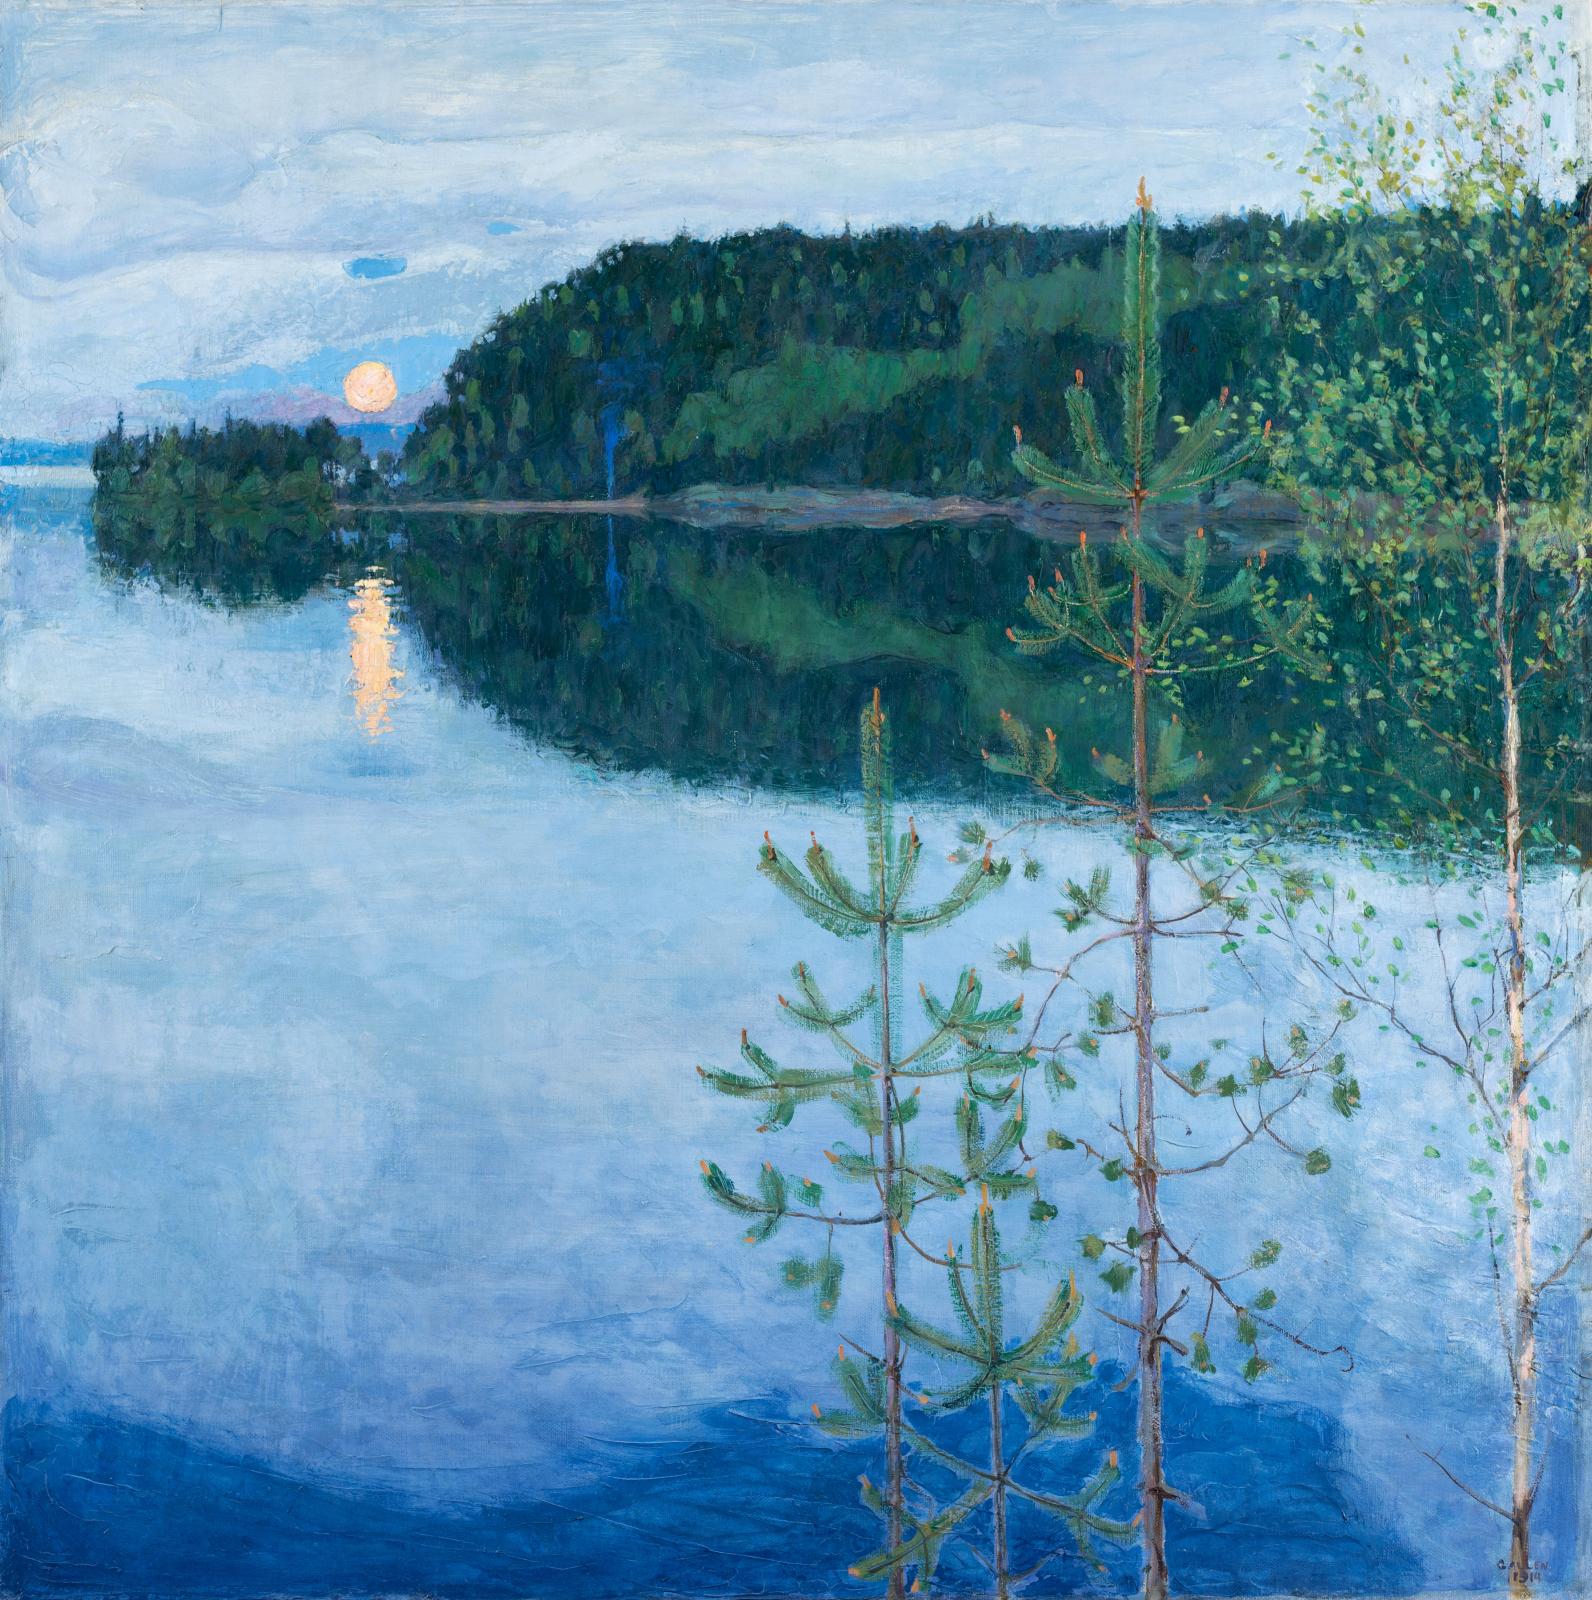 La Finlande selon Gallen-Kallela au musée Jacquemart-André